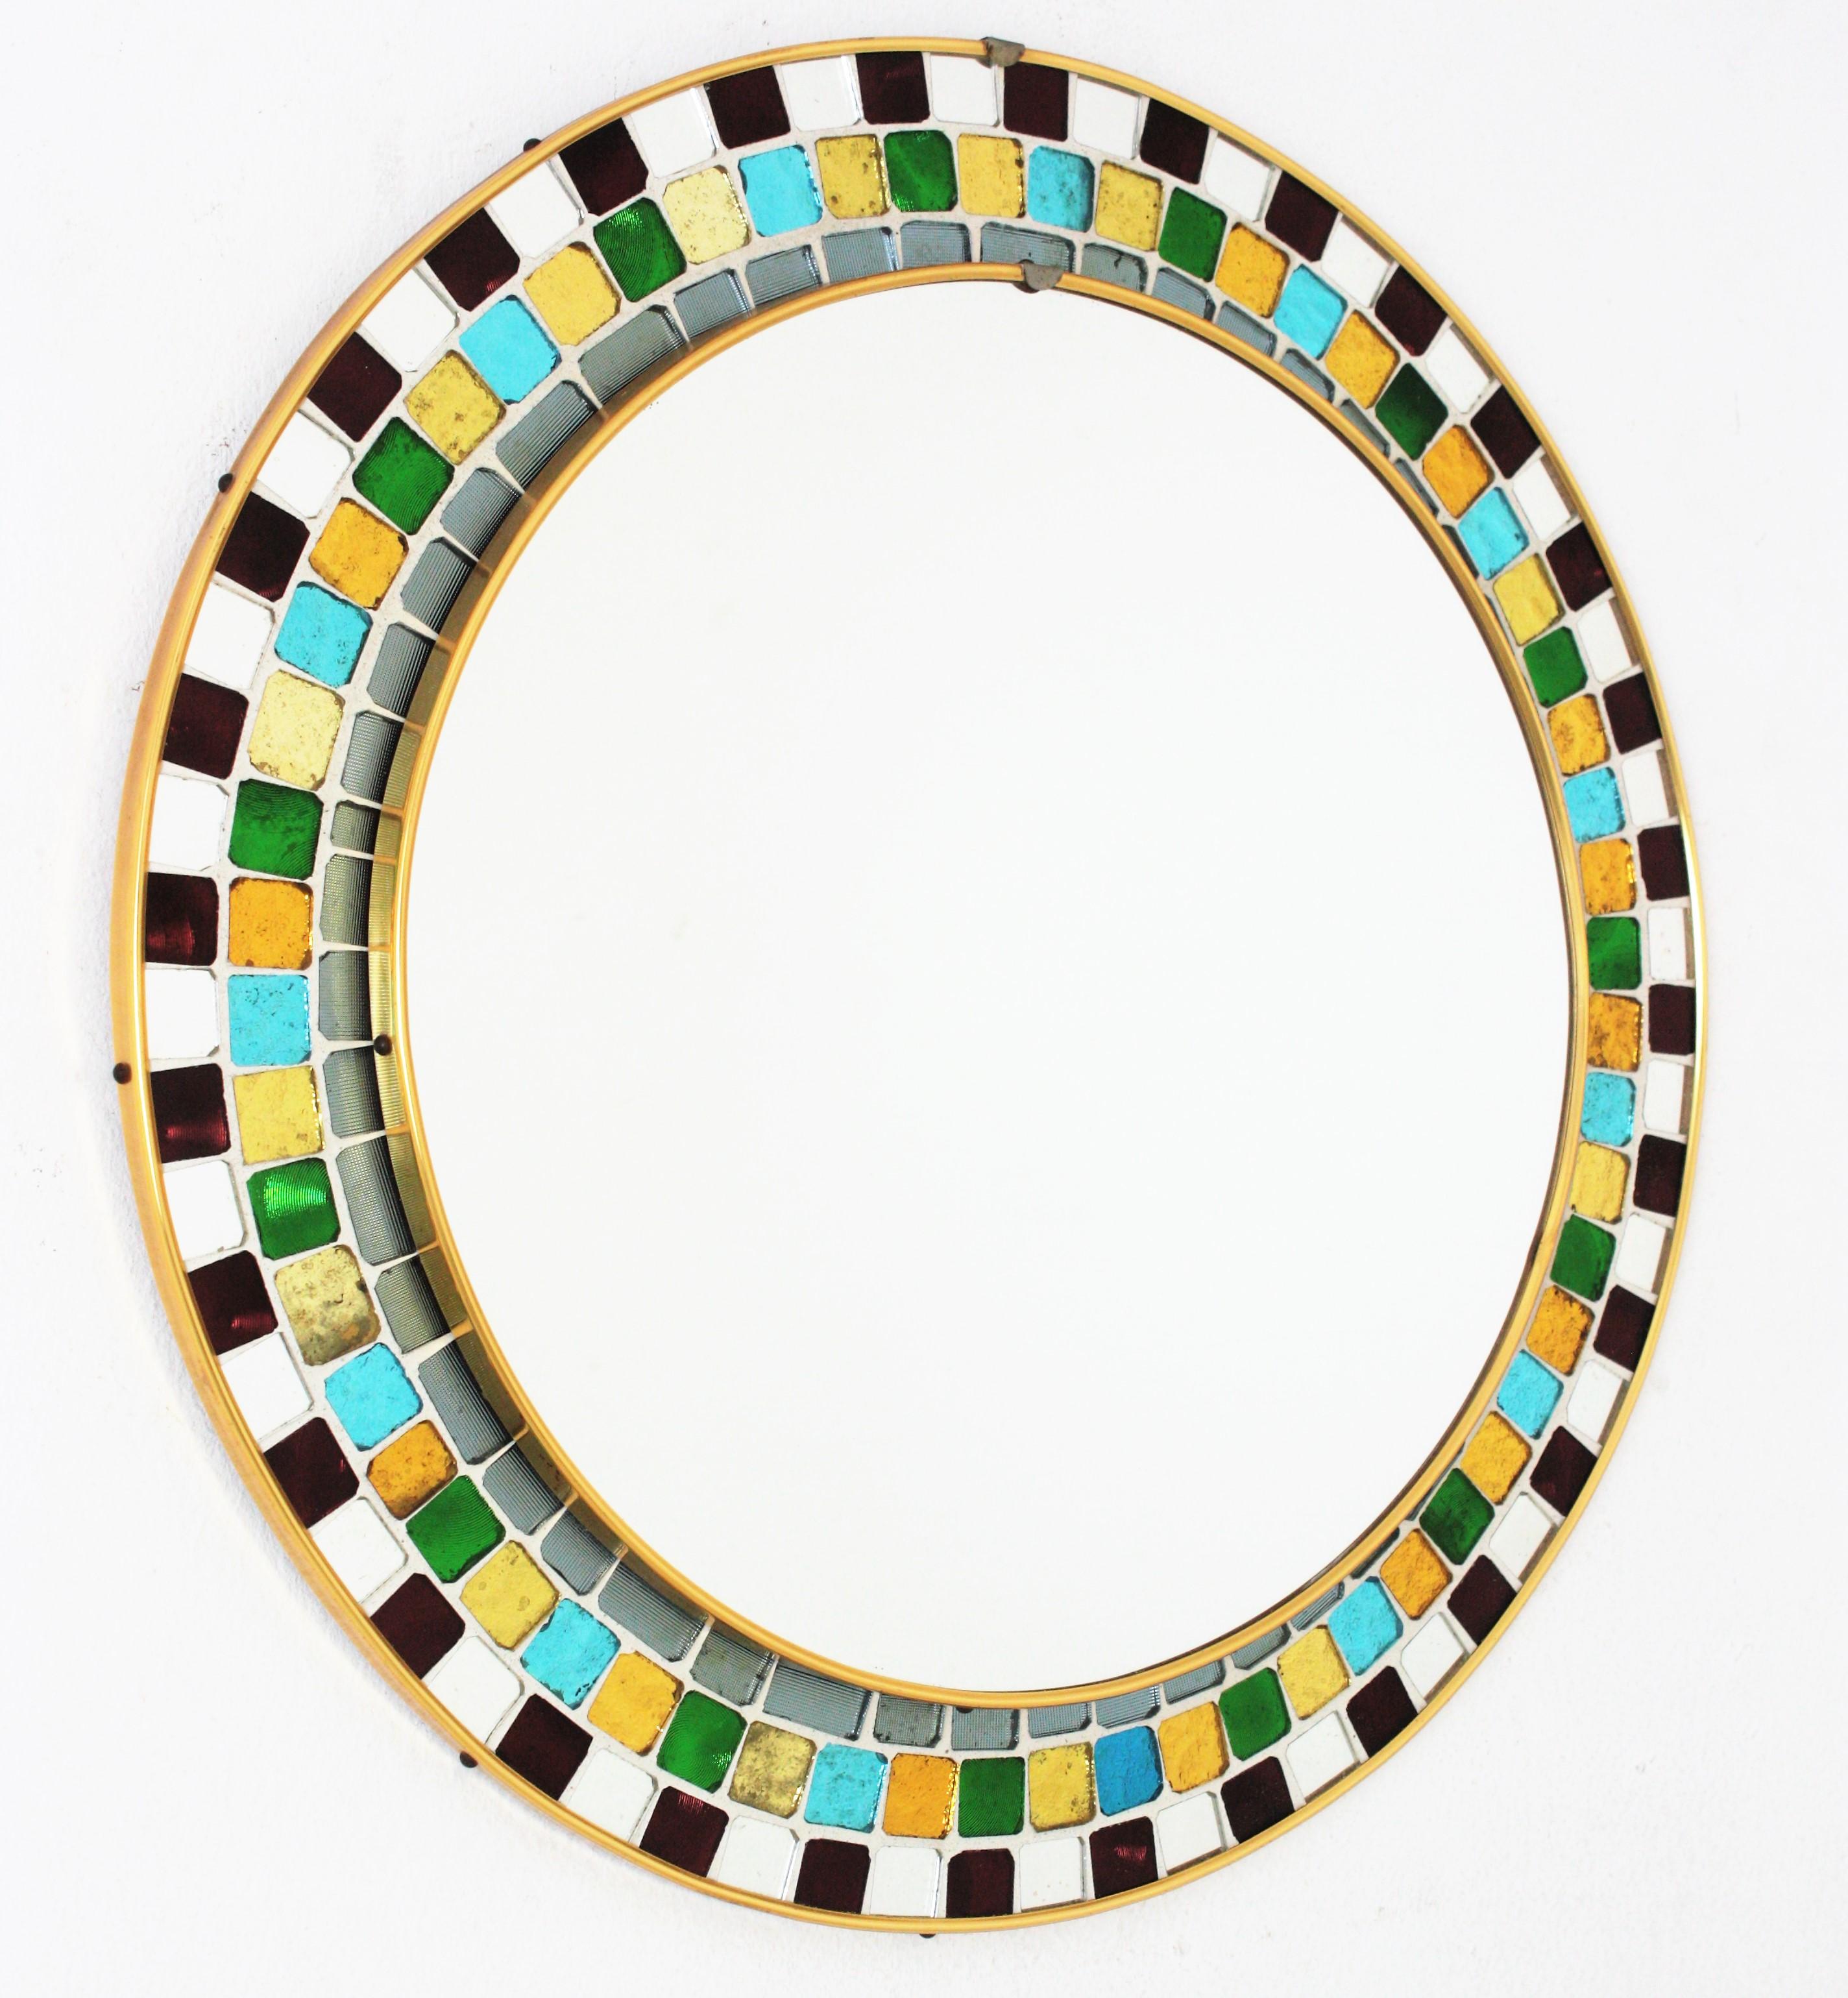 mirror mosaic frame